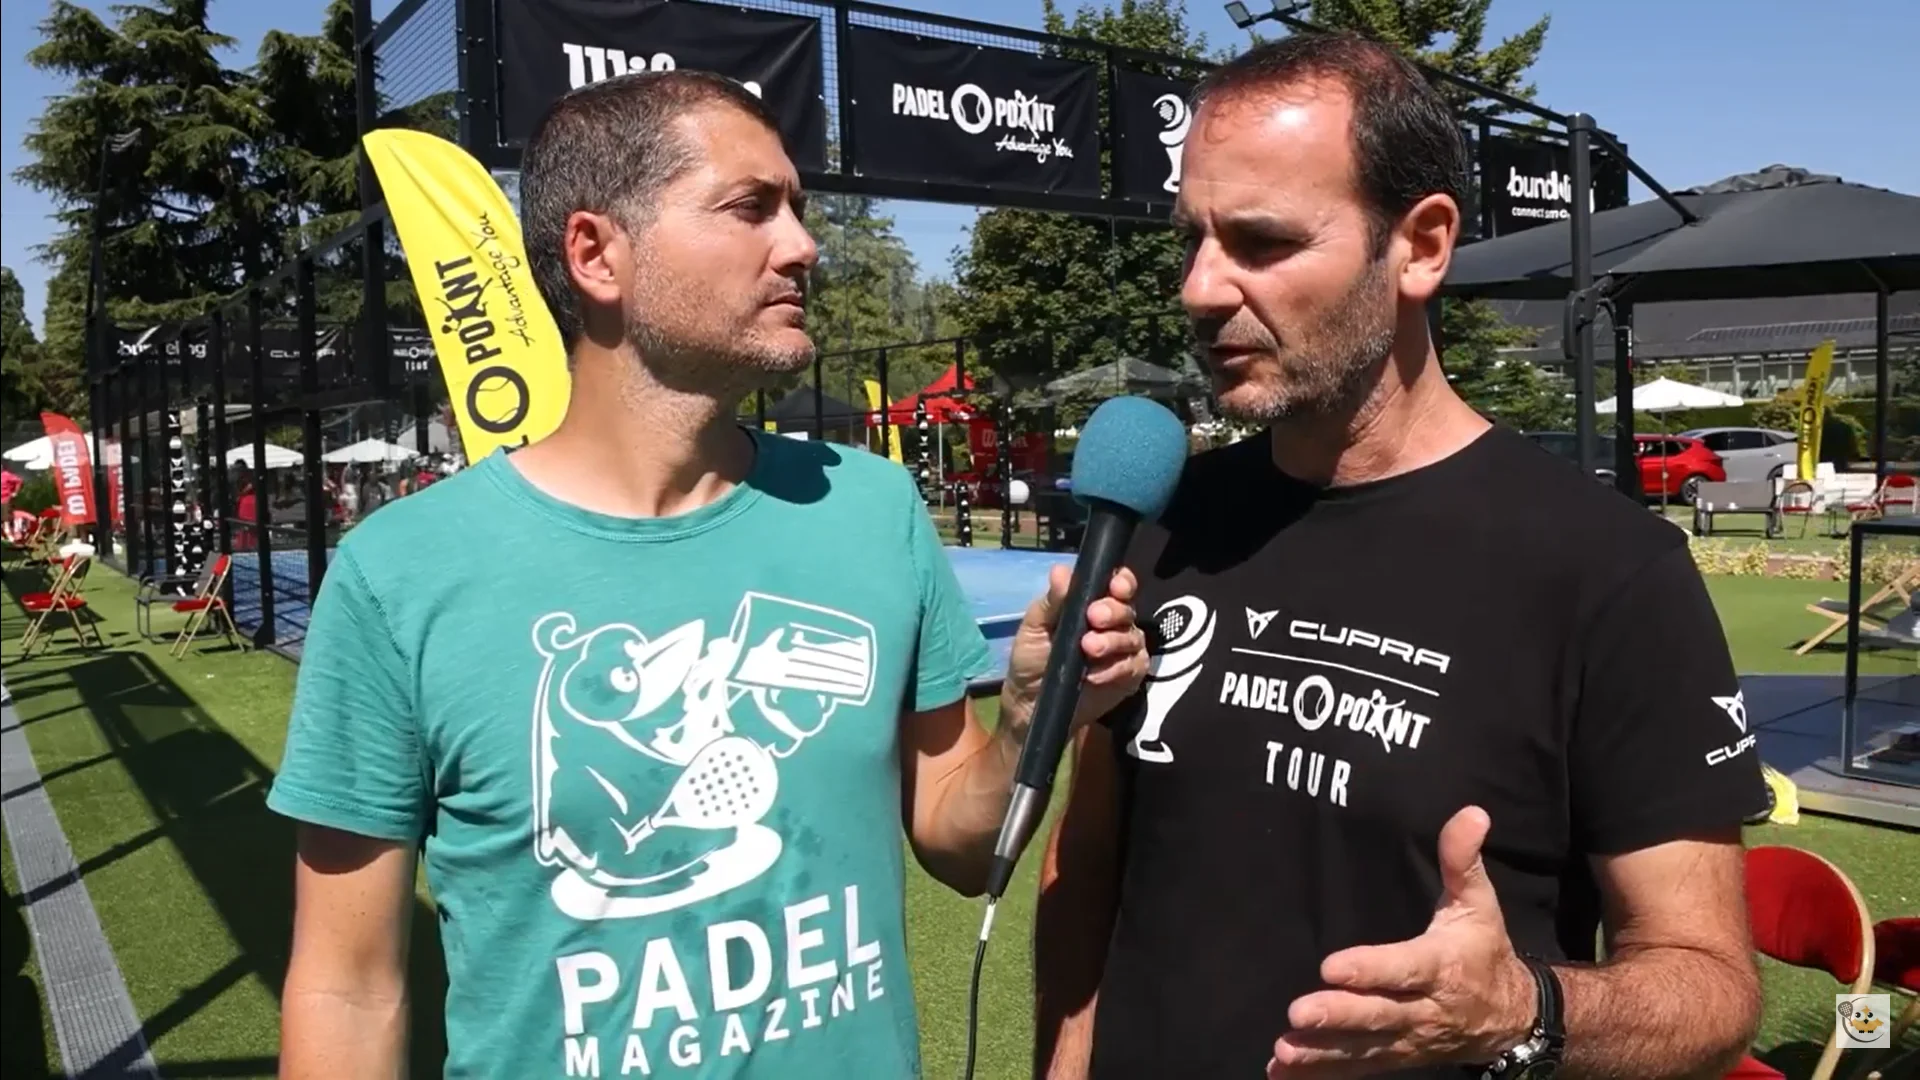 Franck Lemousse: “Dois jogadores emblemáticos da seleção francesa para o Cupra Padel-Point Tour"